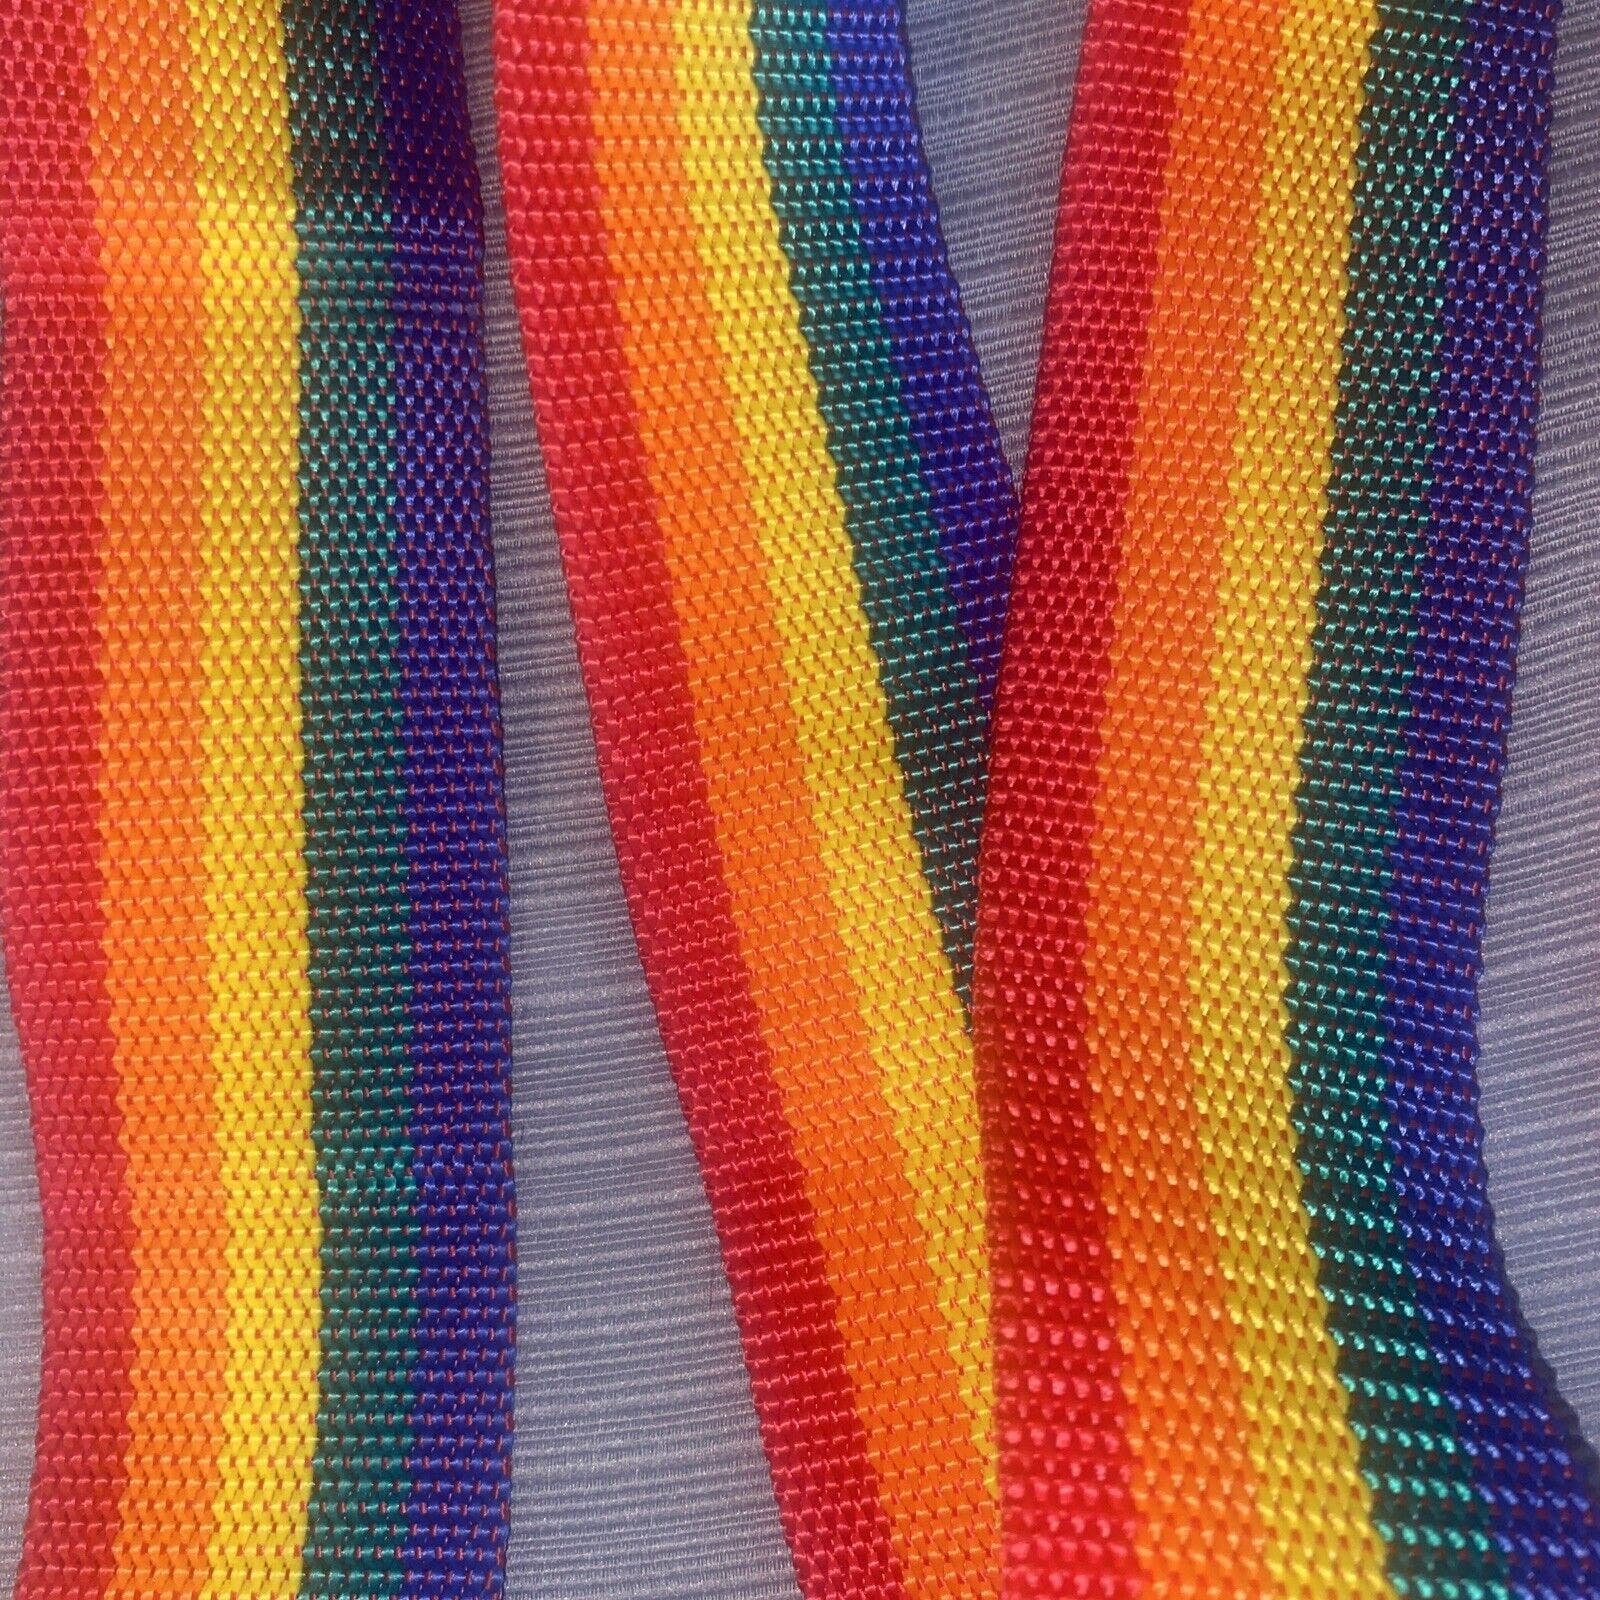 Vintage Rainbow Nylon Belt or Strap w/ Silver Tone Buckle ~ 72” L x 2” W fXxnRYAfb